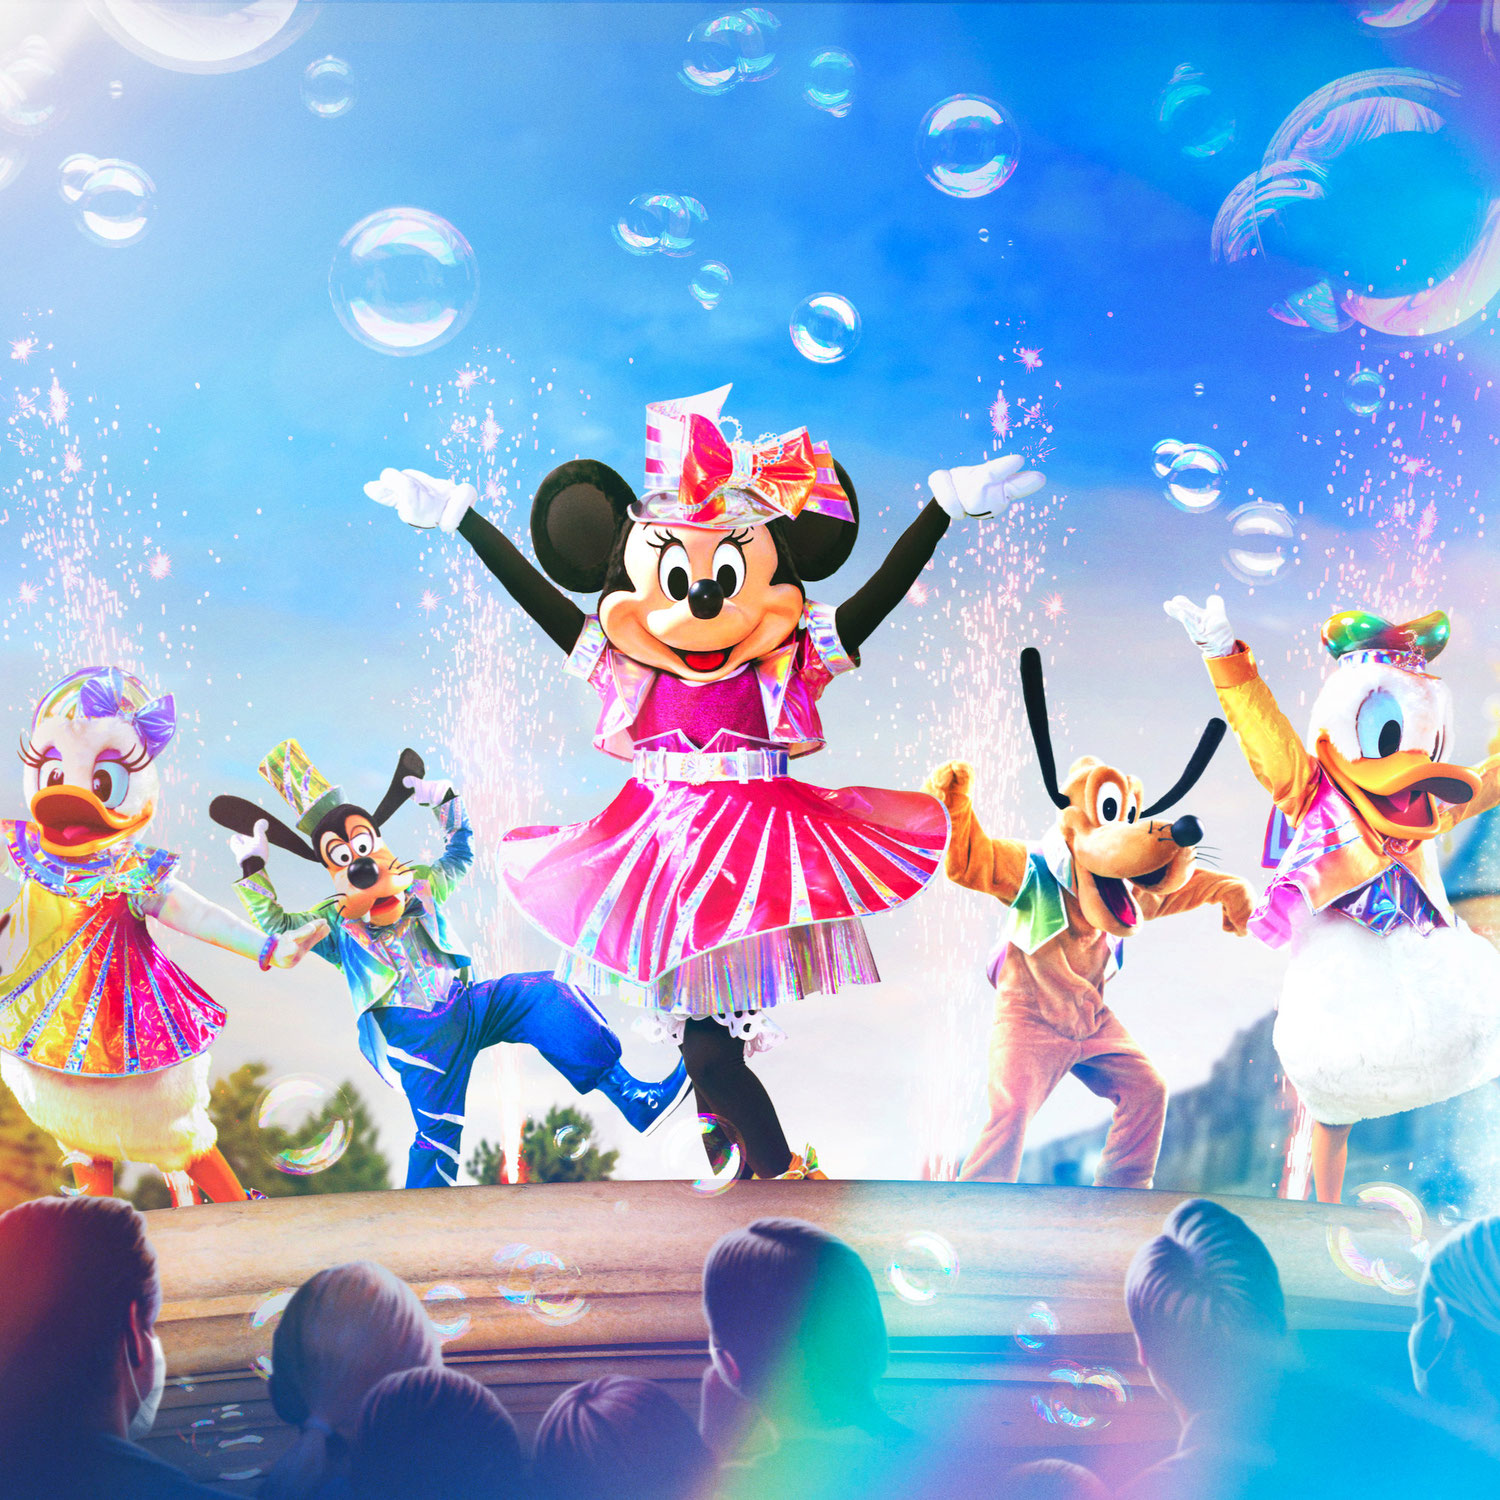 Feiere das 30. Jubiläum von Disneyland® Paris und entdecke mehr Zauber als jemals zuvor